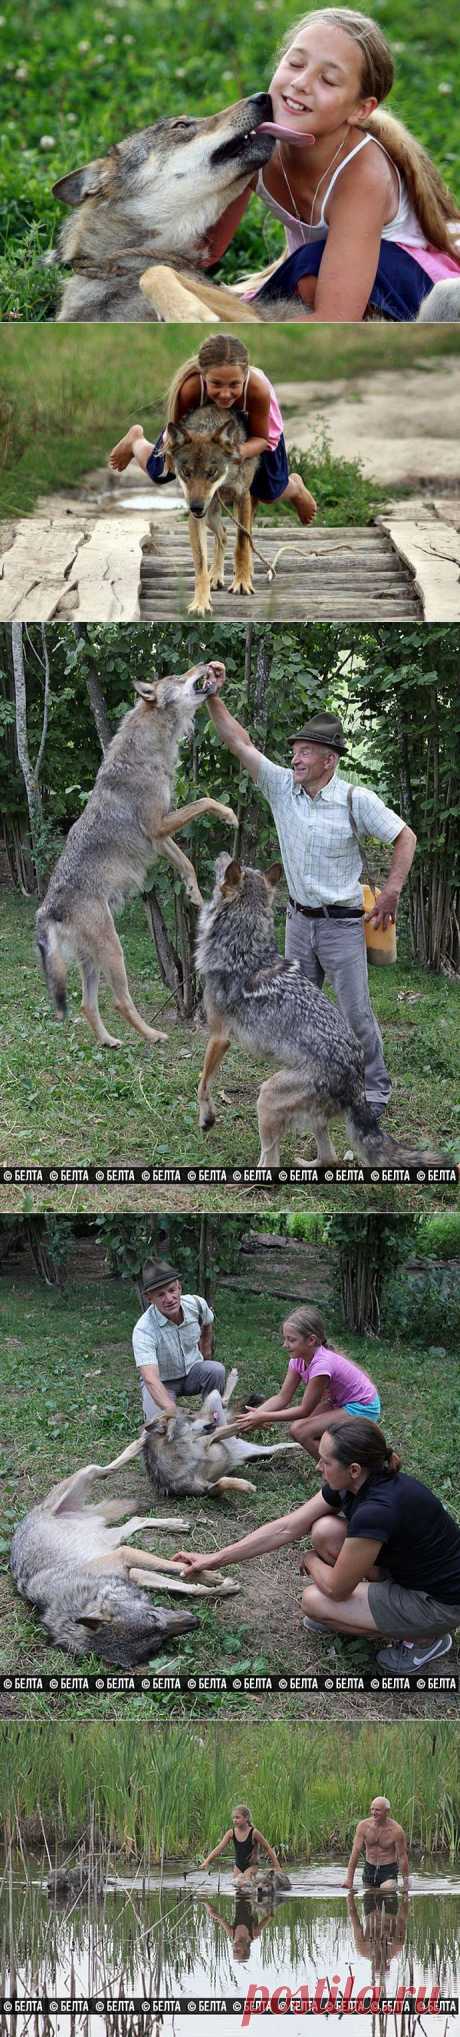 Белорусская семья вырастила стаю волков (10 фото) | ХОЧУ ВСЁ ЗНАТЬ